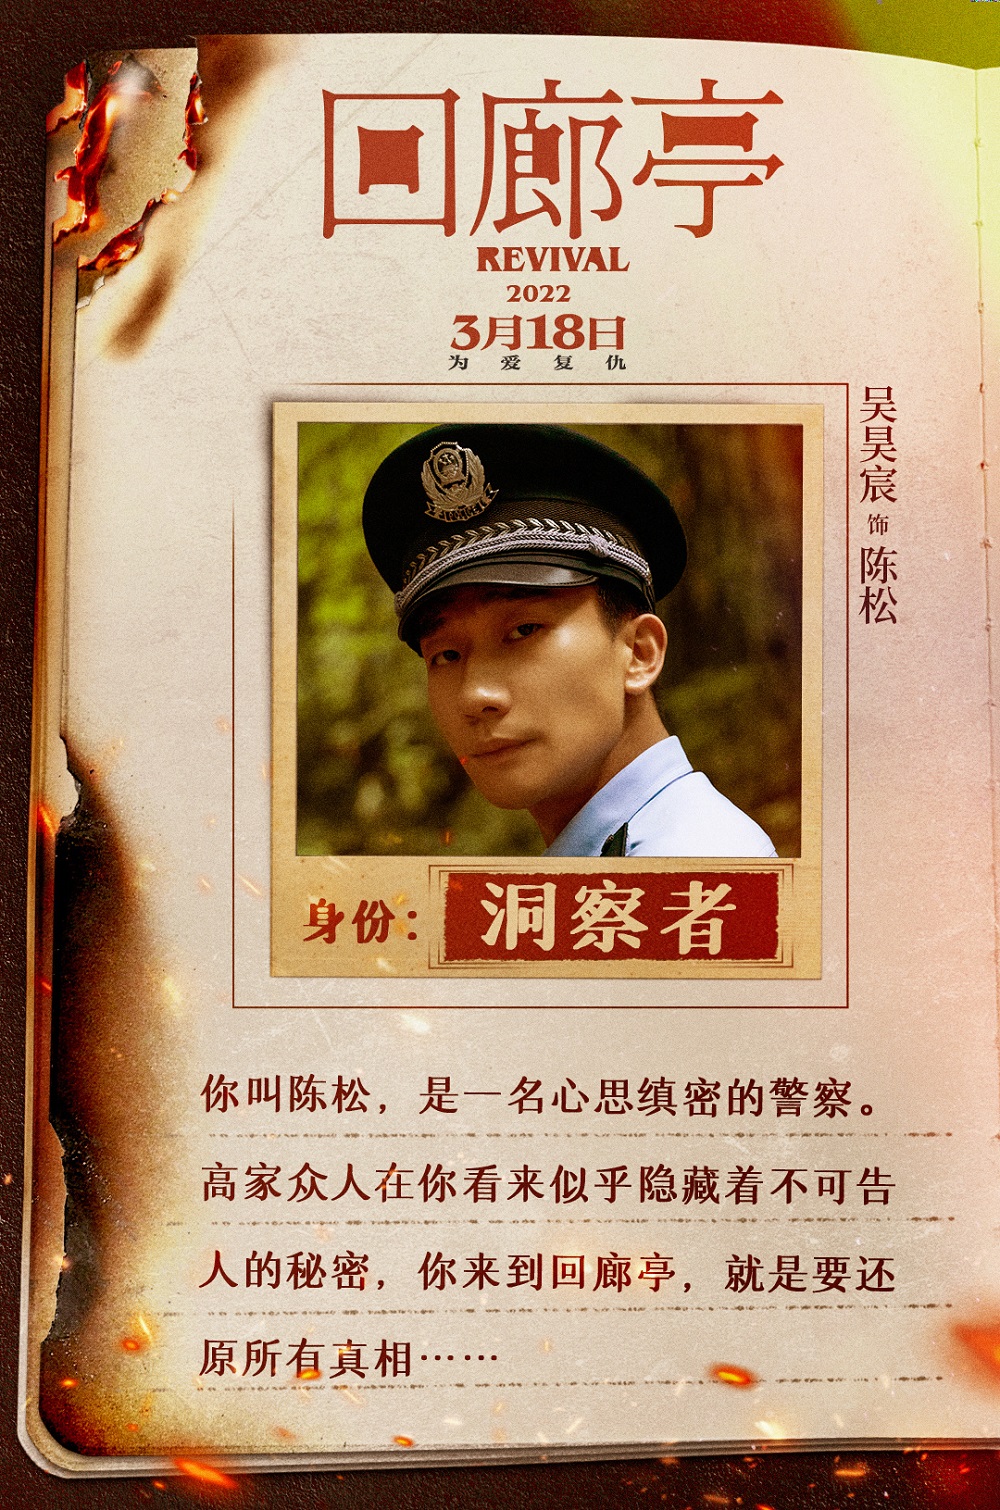 電影《回廊亭》定檔3.18 吳昊宸特別出演警察還原案件真相